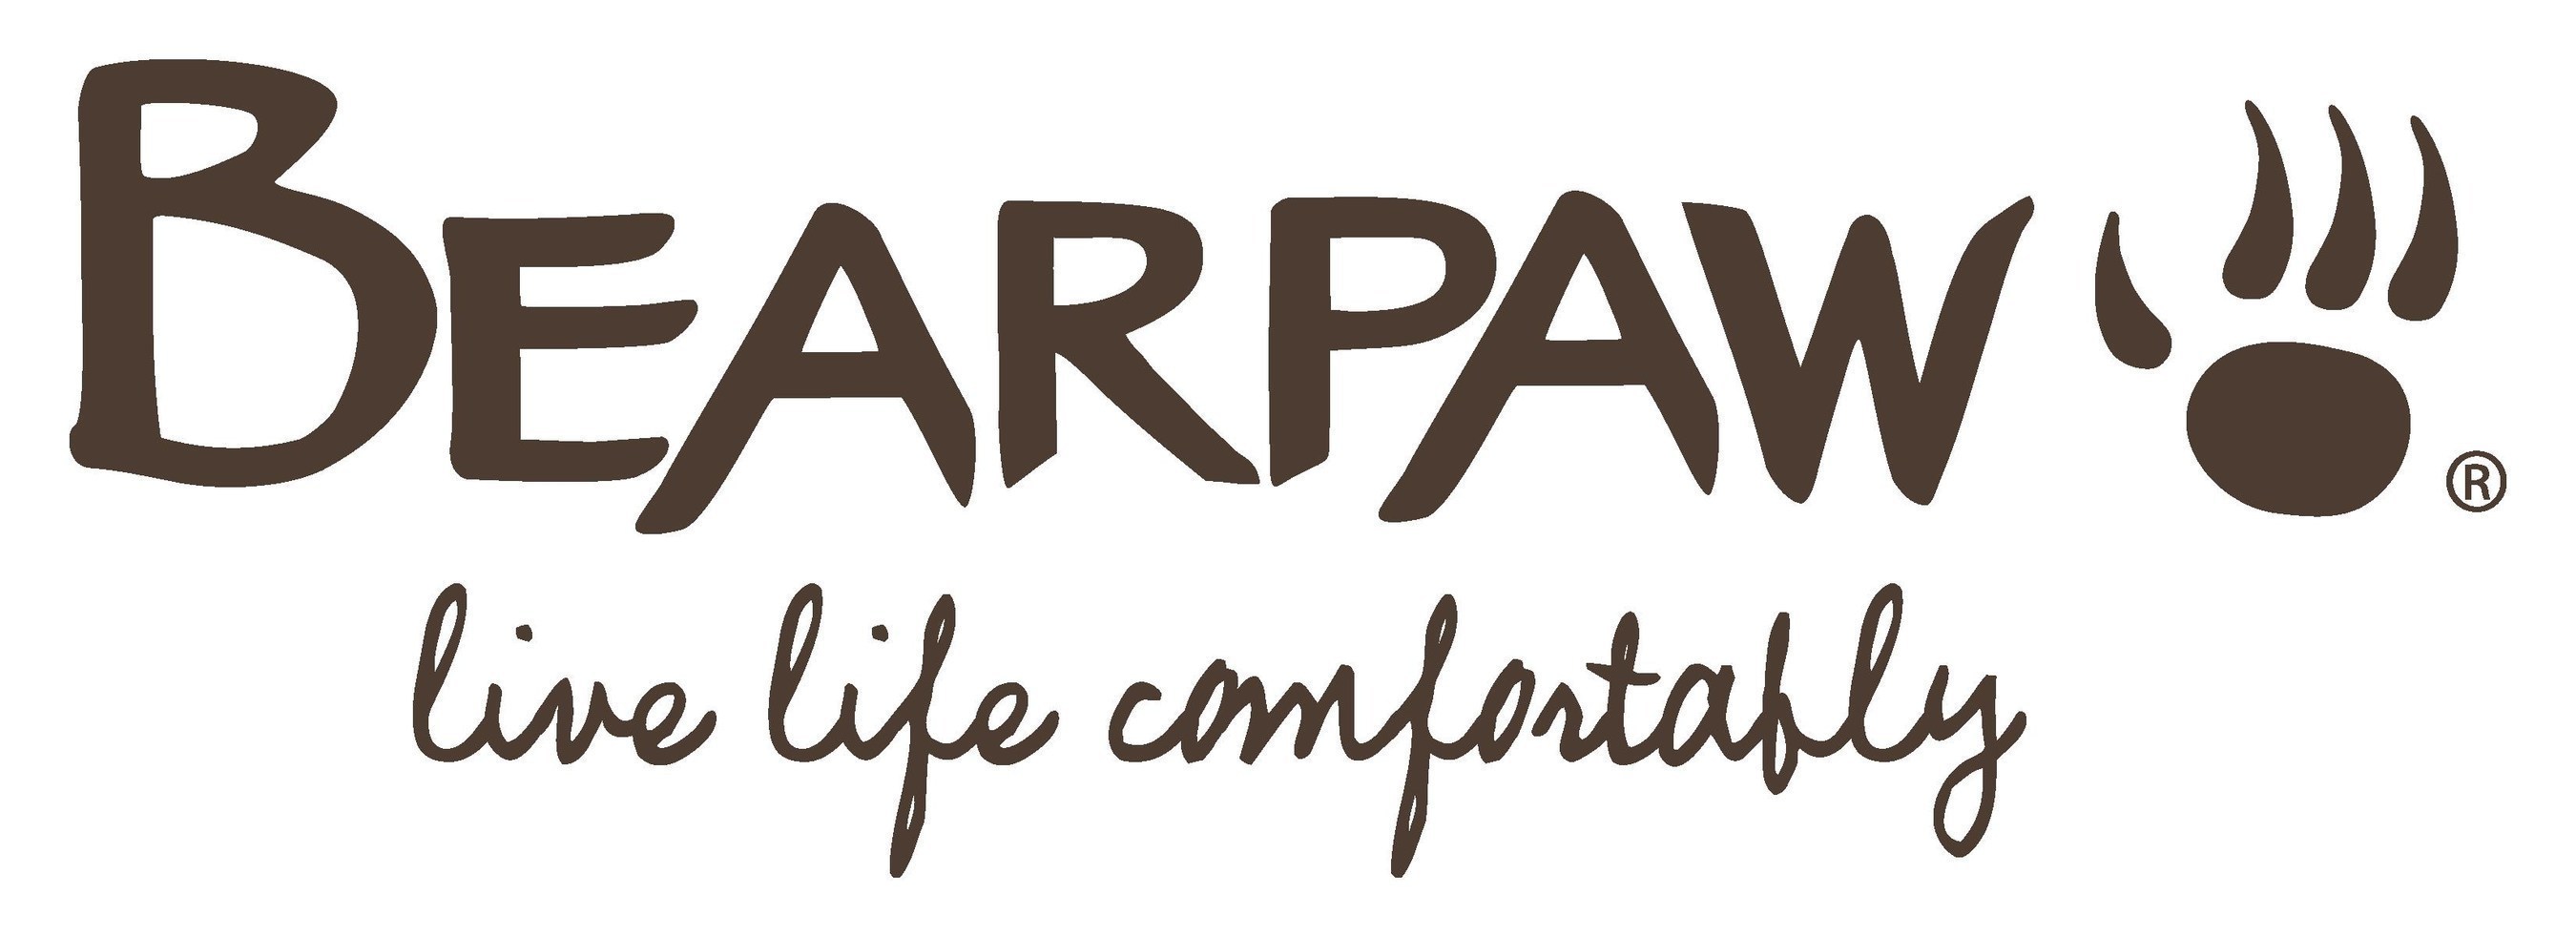 BEARPAW_Logo